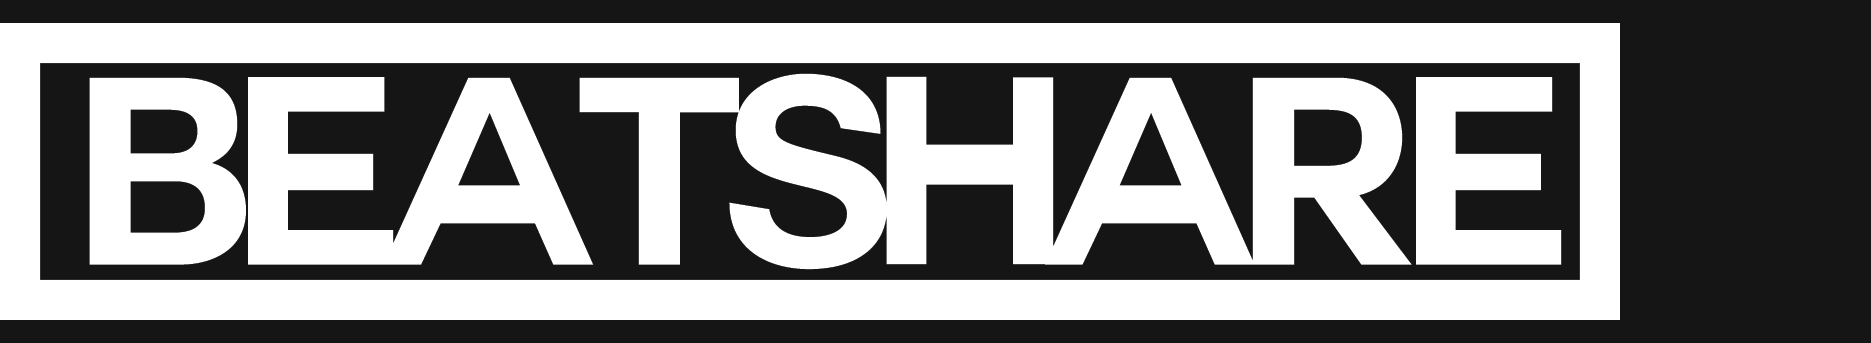 Beatshare: nový projekt pro Dje a producenty